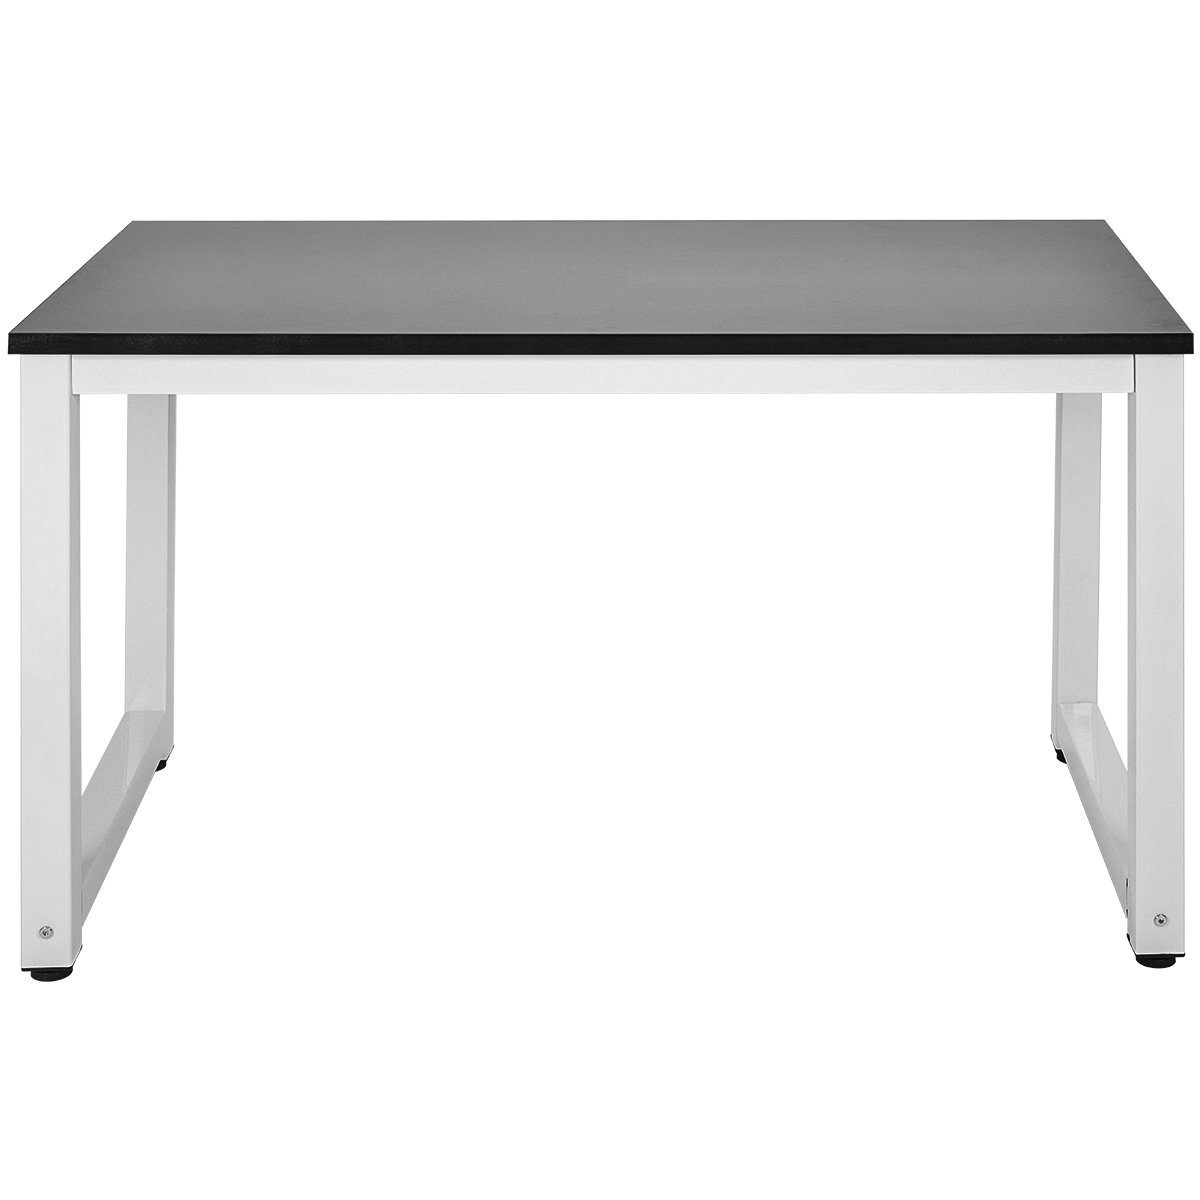 schwarz weiß | | Computertisch Stahlgestell Arbeitstisch Schreibtisch, schwarz Flieks 120*60*75cm